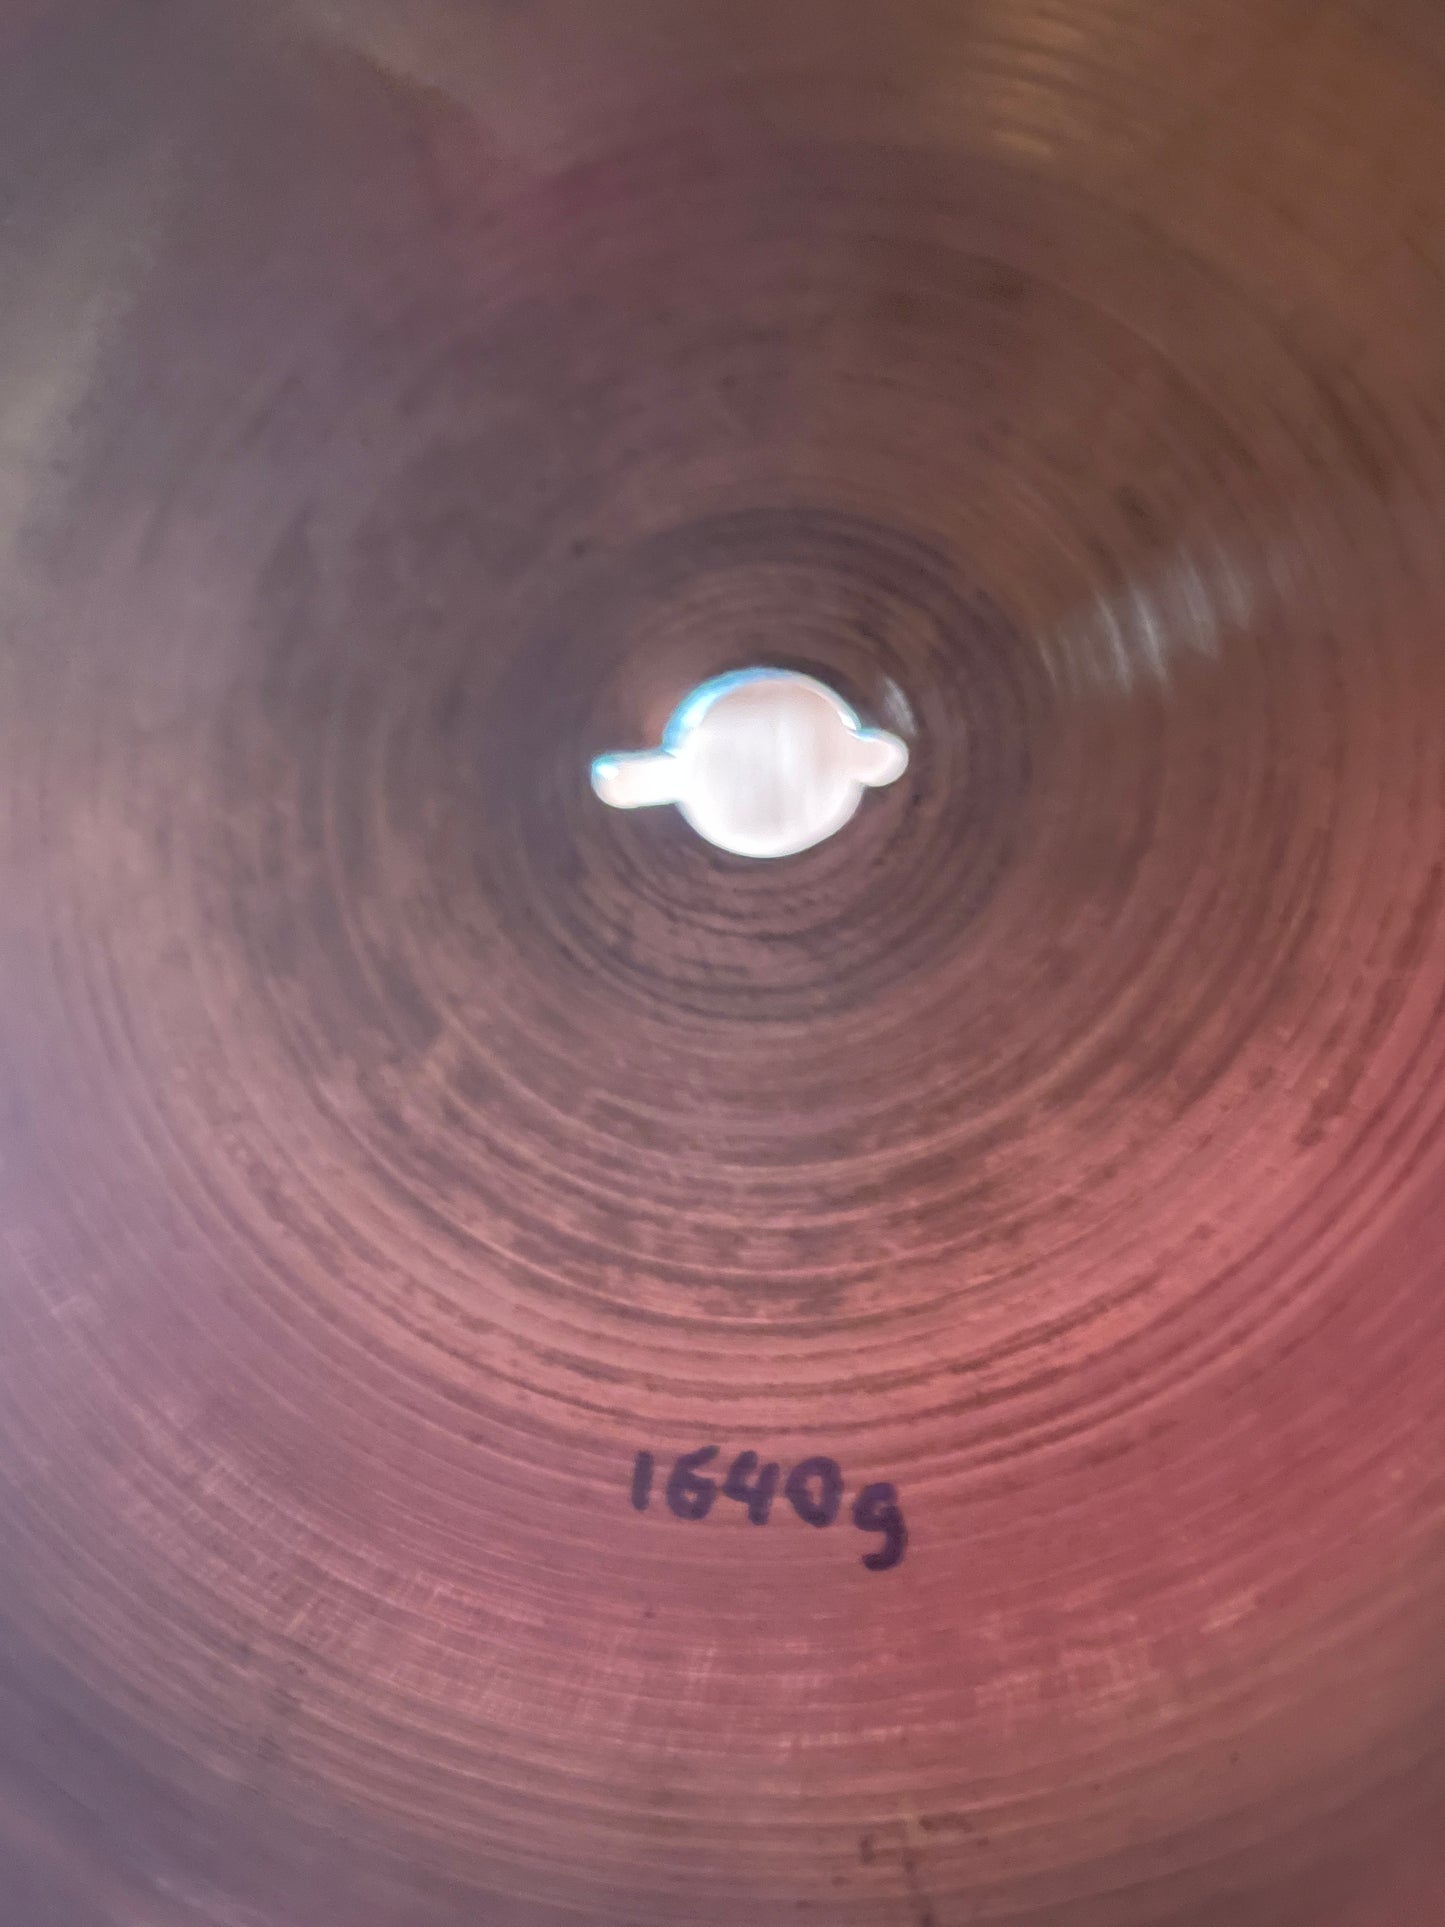 18" Zildjian A 1960s Crash Ride Cymbal 1640g *Video Demo*